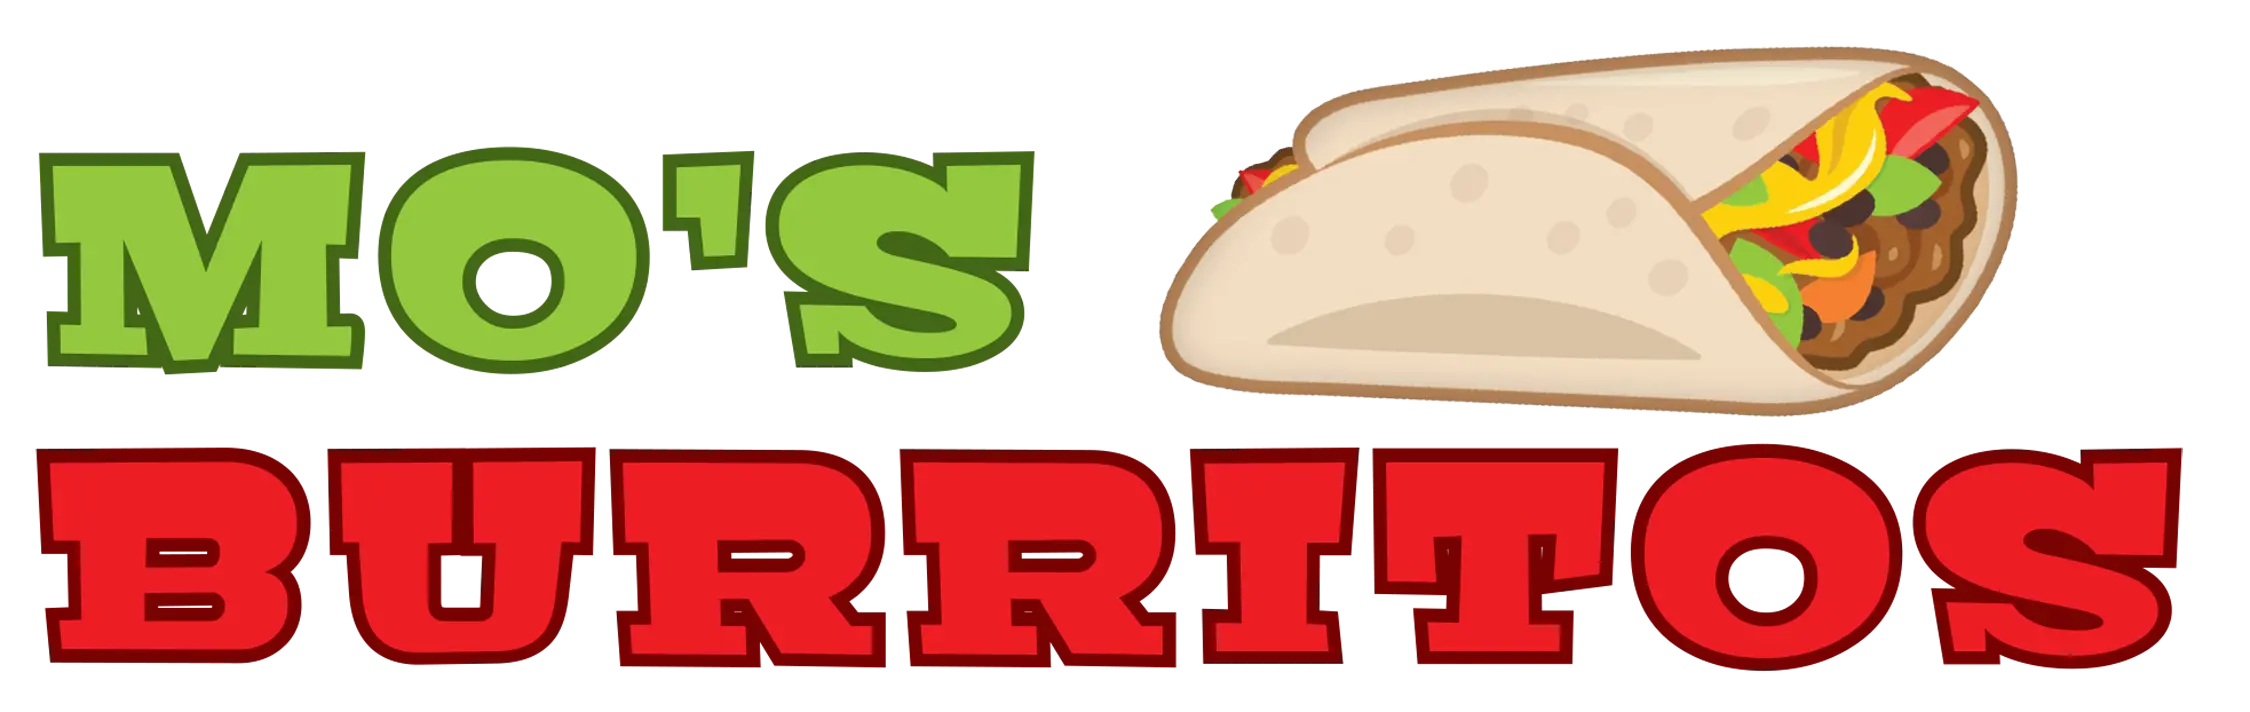 mo's burritos logo